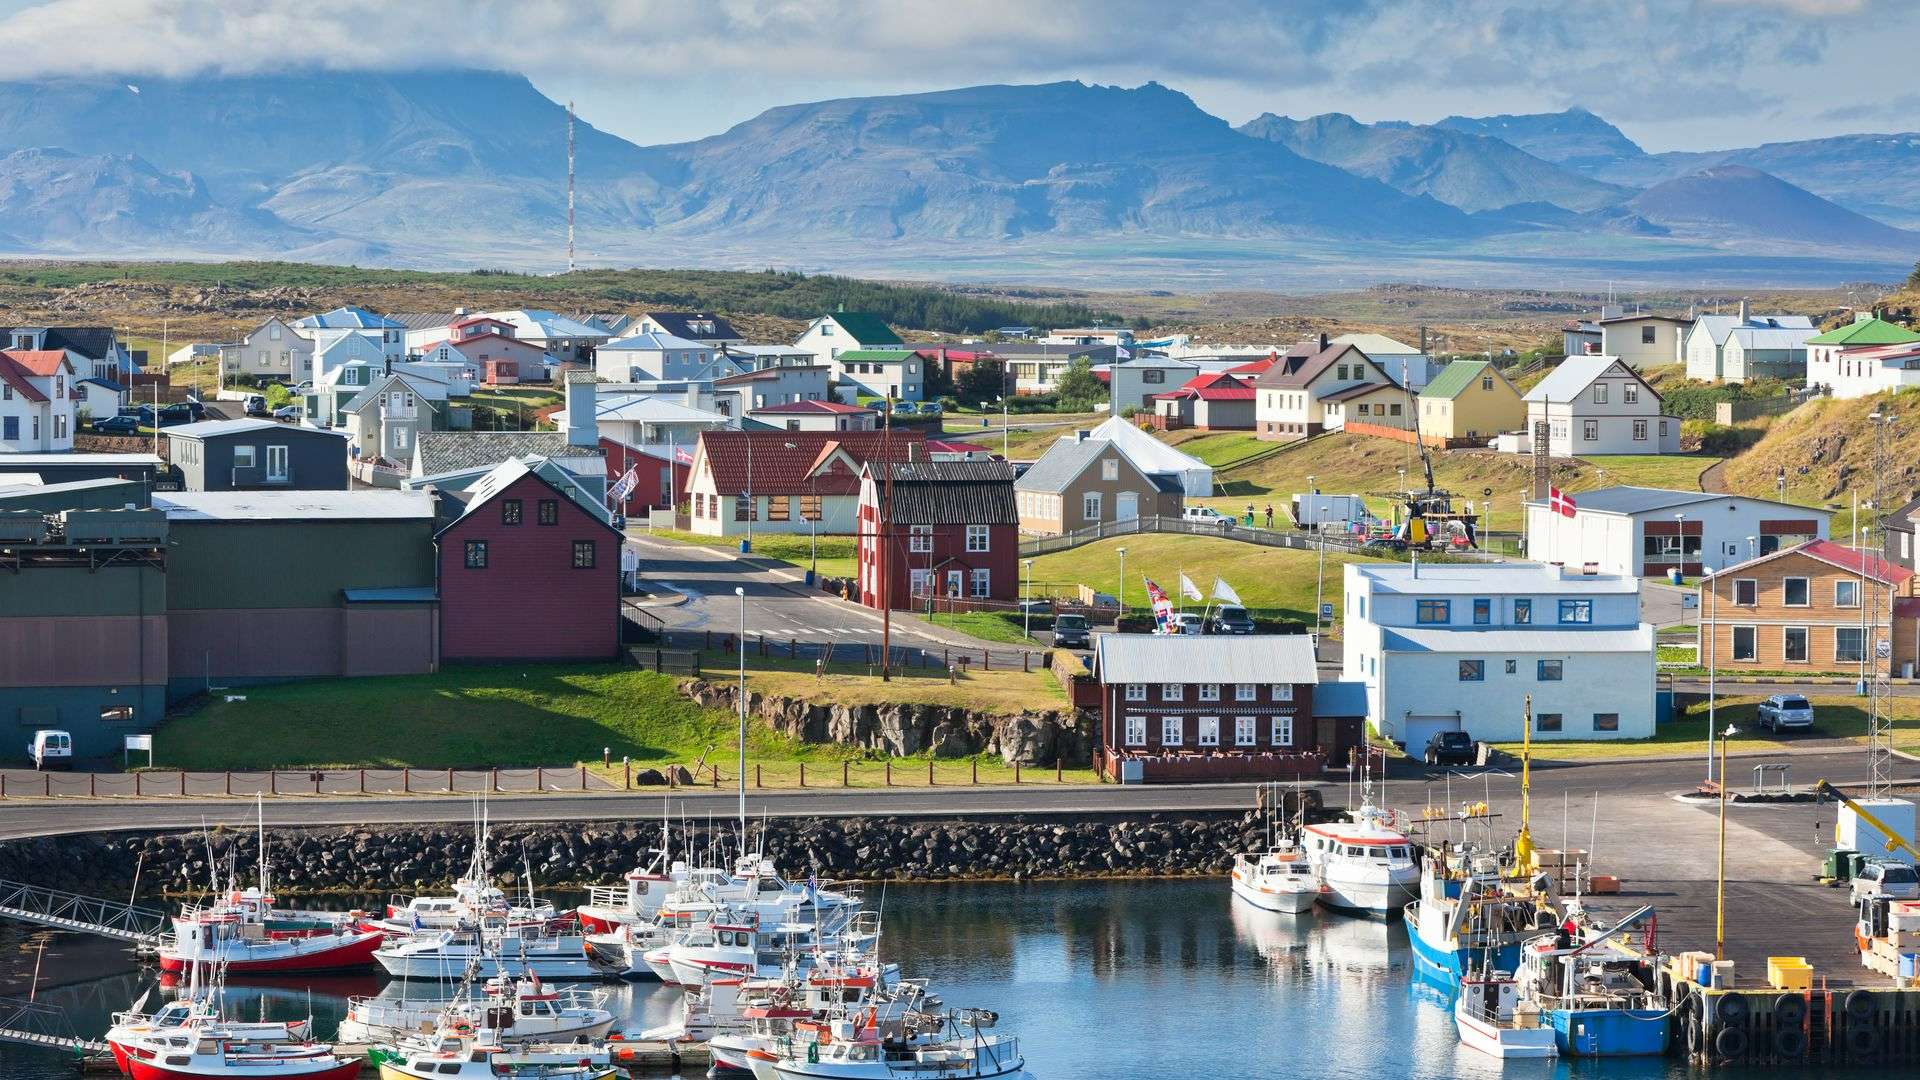 The Icelandic fishing village of Stykkishólmur